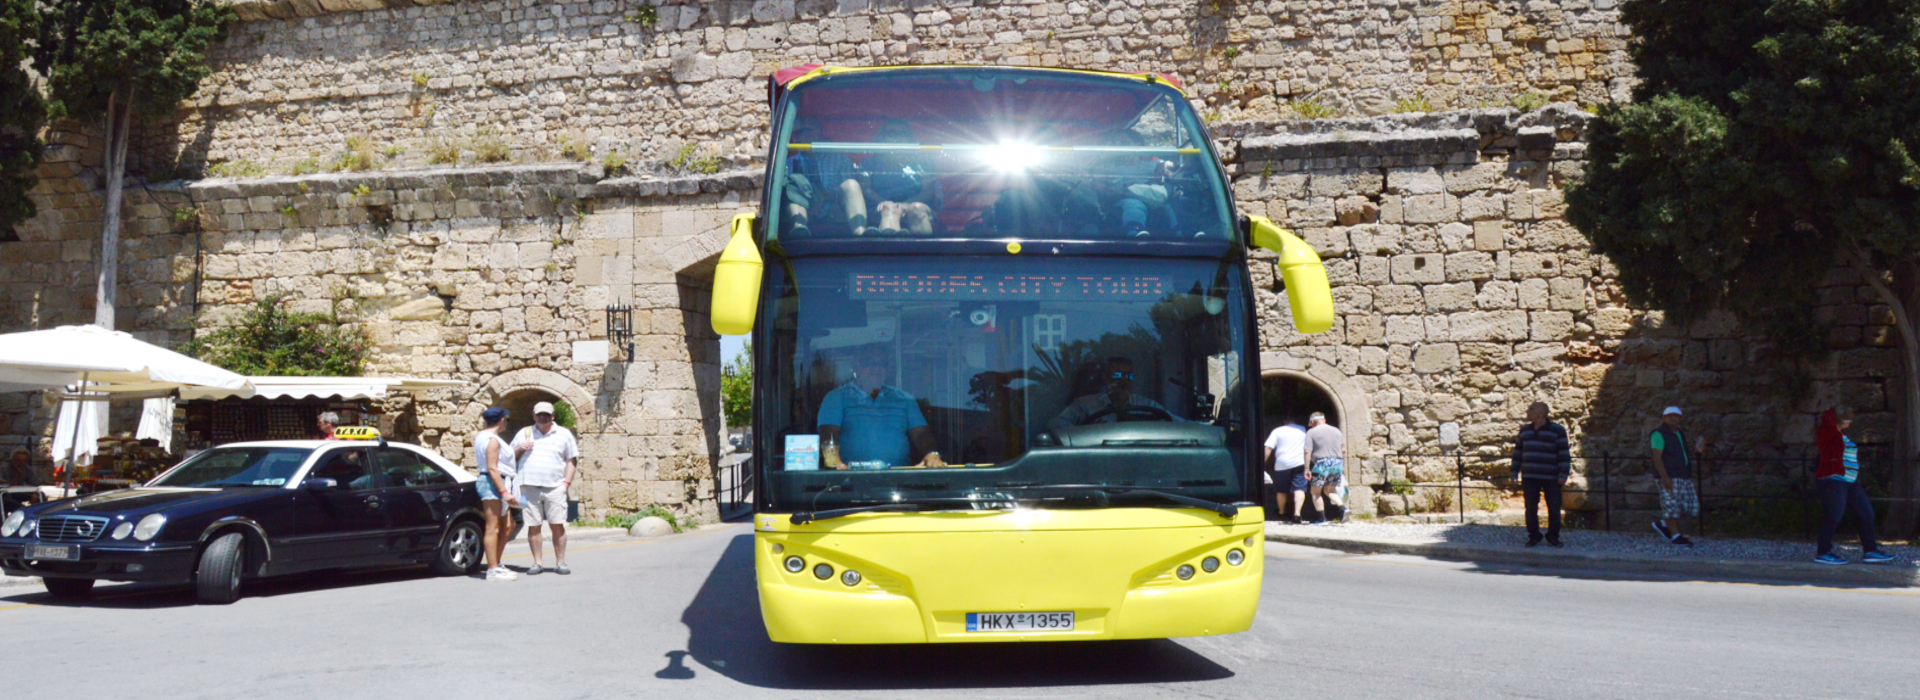 Rhodos Stadtrundfahrt mit offenem Bus | Captains Tours